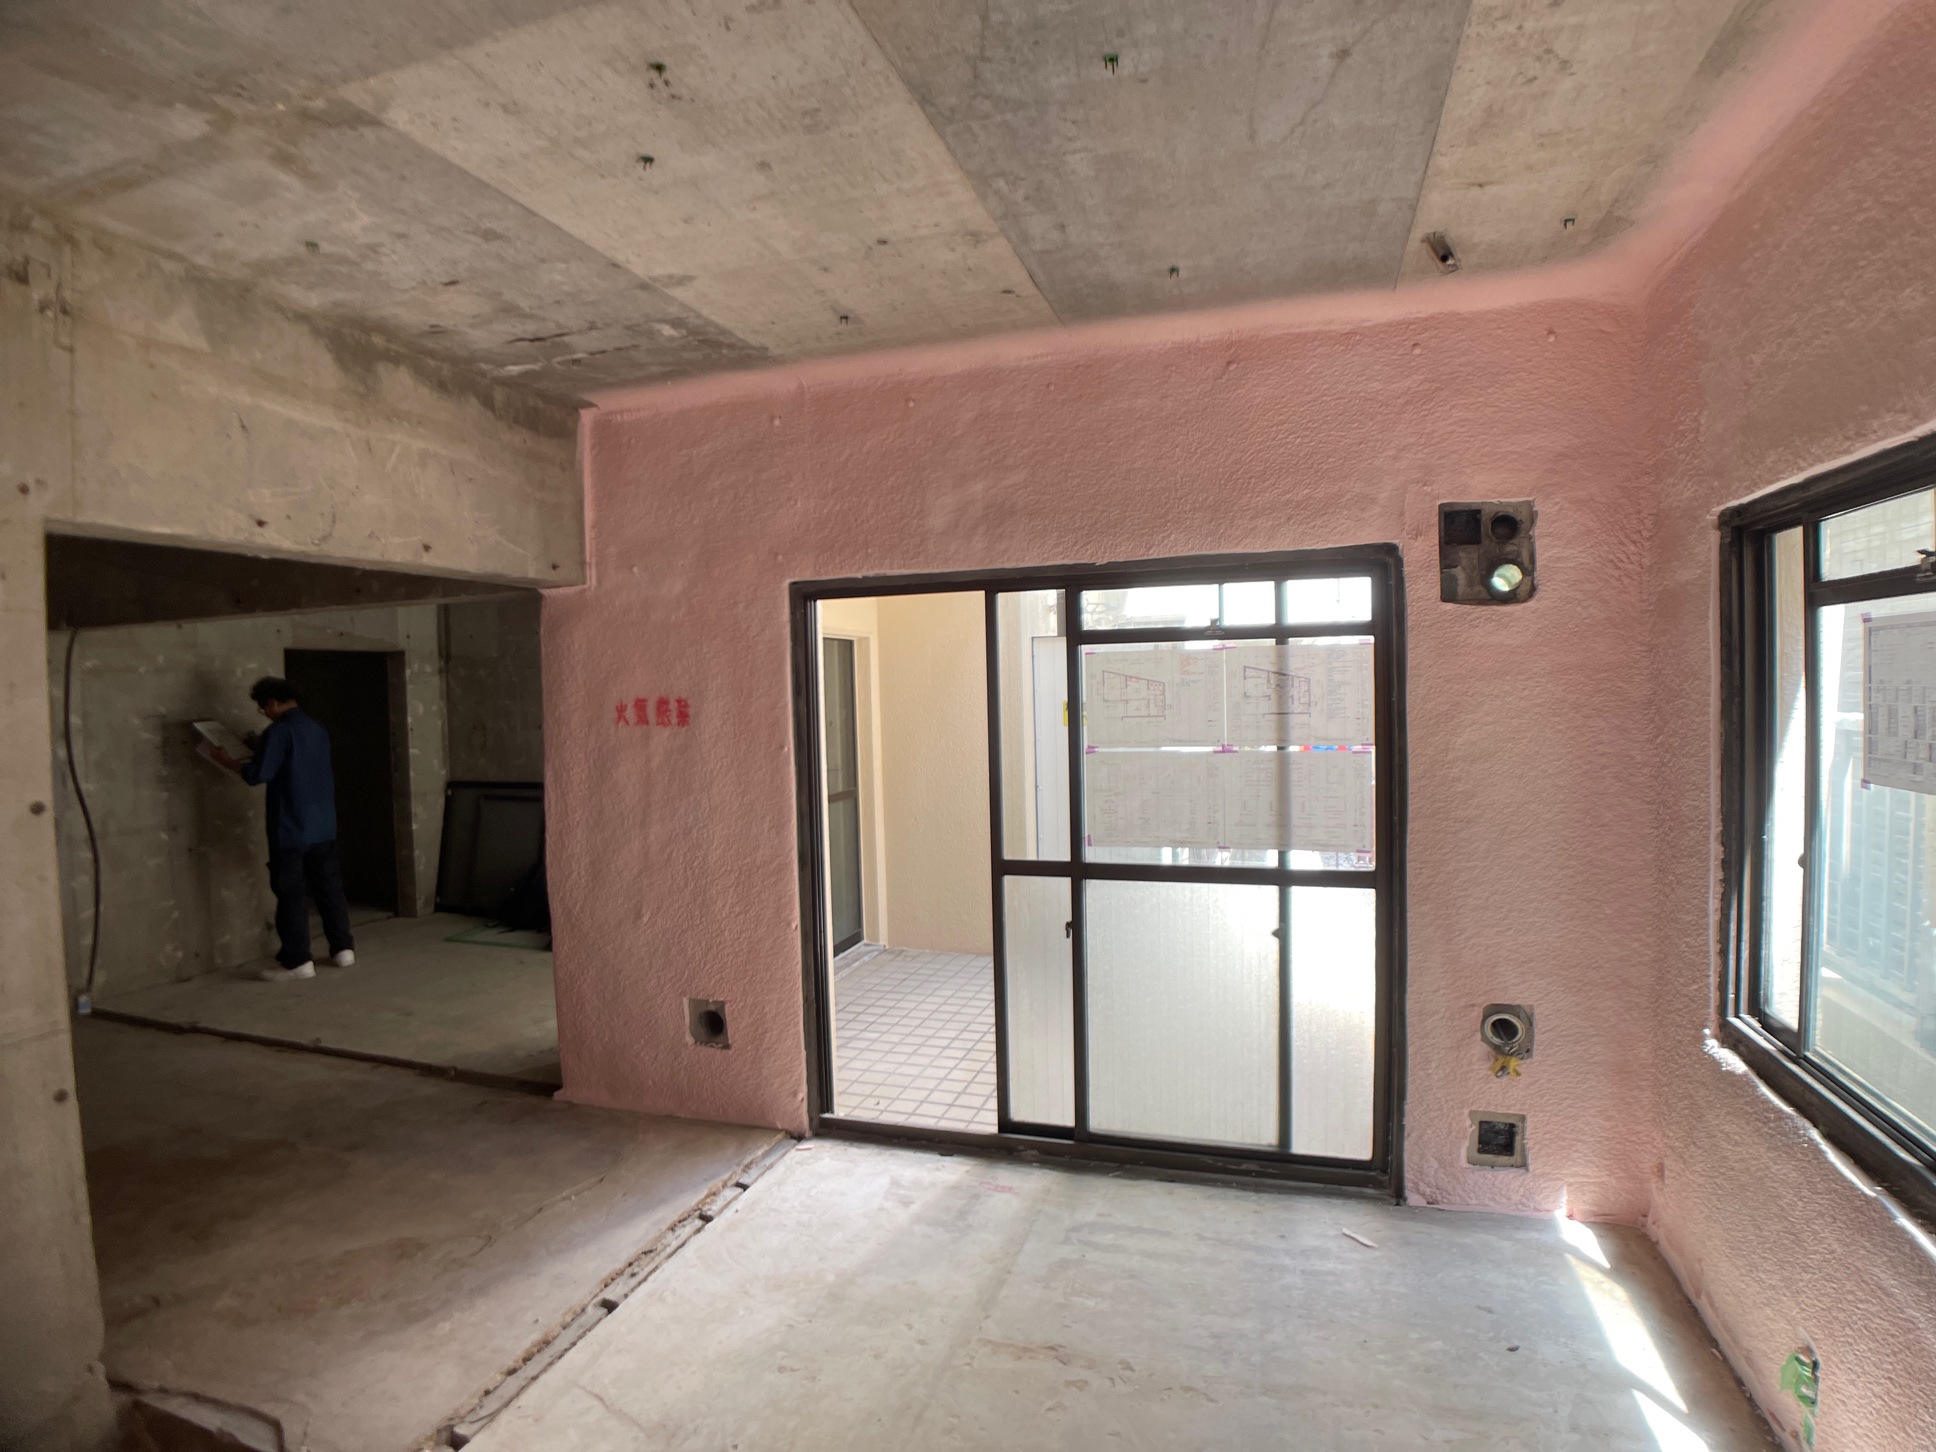 断熱施工中のマンションの壁。外に面した壁のみにピンク色で吹付式の断熱材が施工されている。